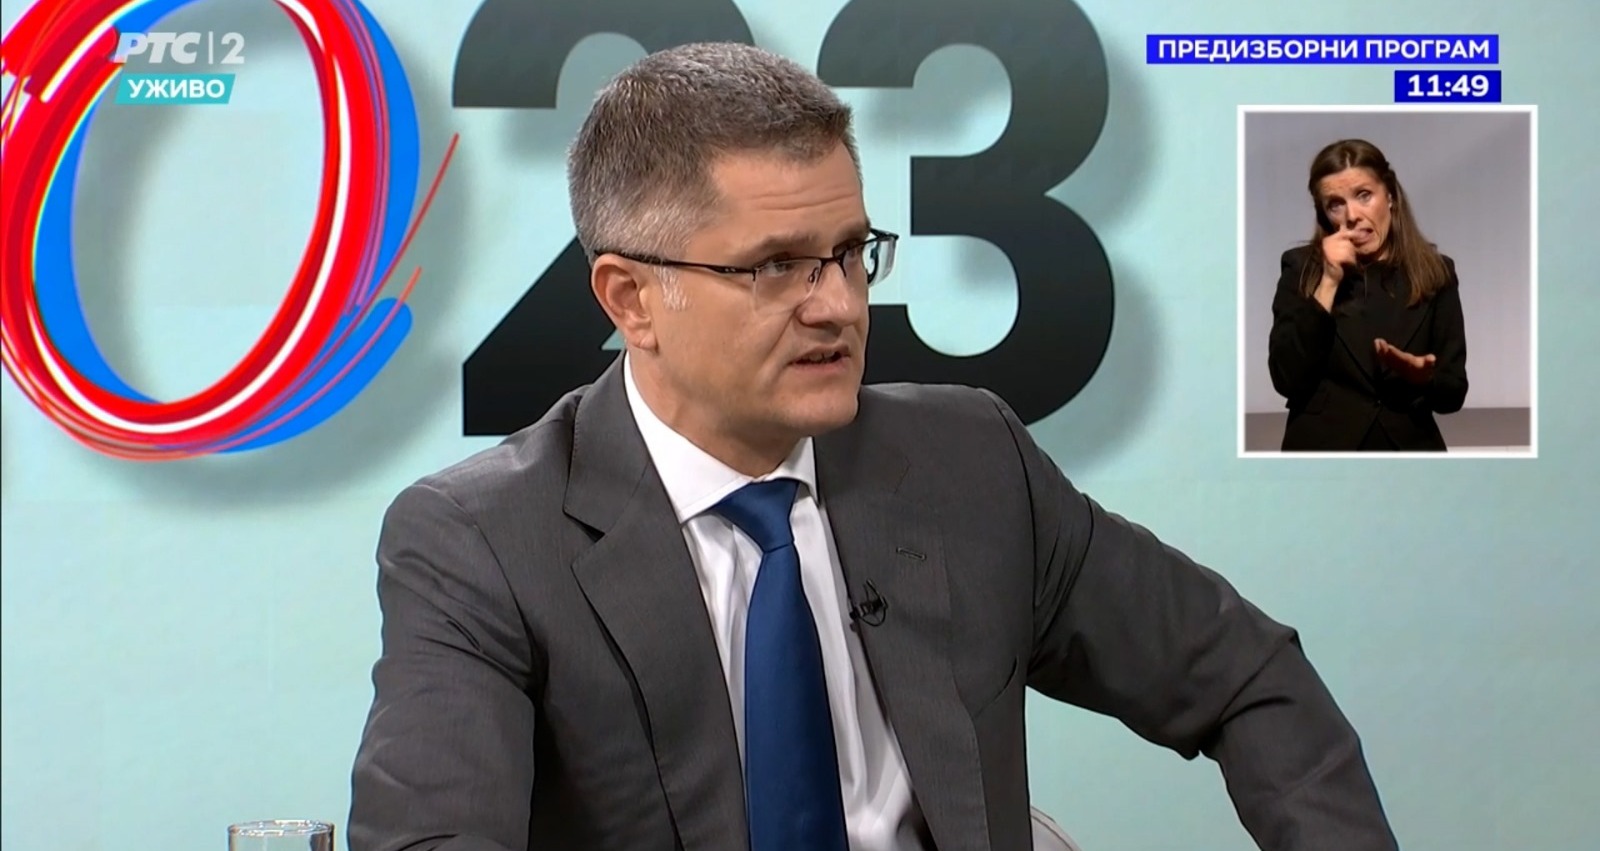 Јеремић: Глас за Народну странку је сигуран избор да Србија сачува Косово и Метохију, огромна већина грађана против признавања лажне државе